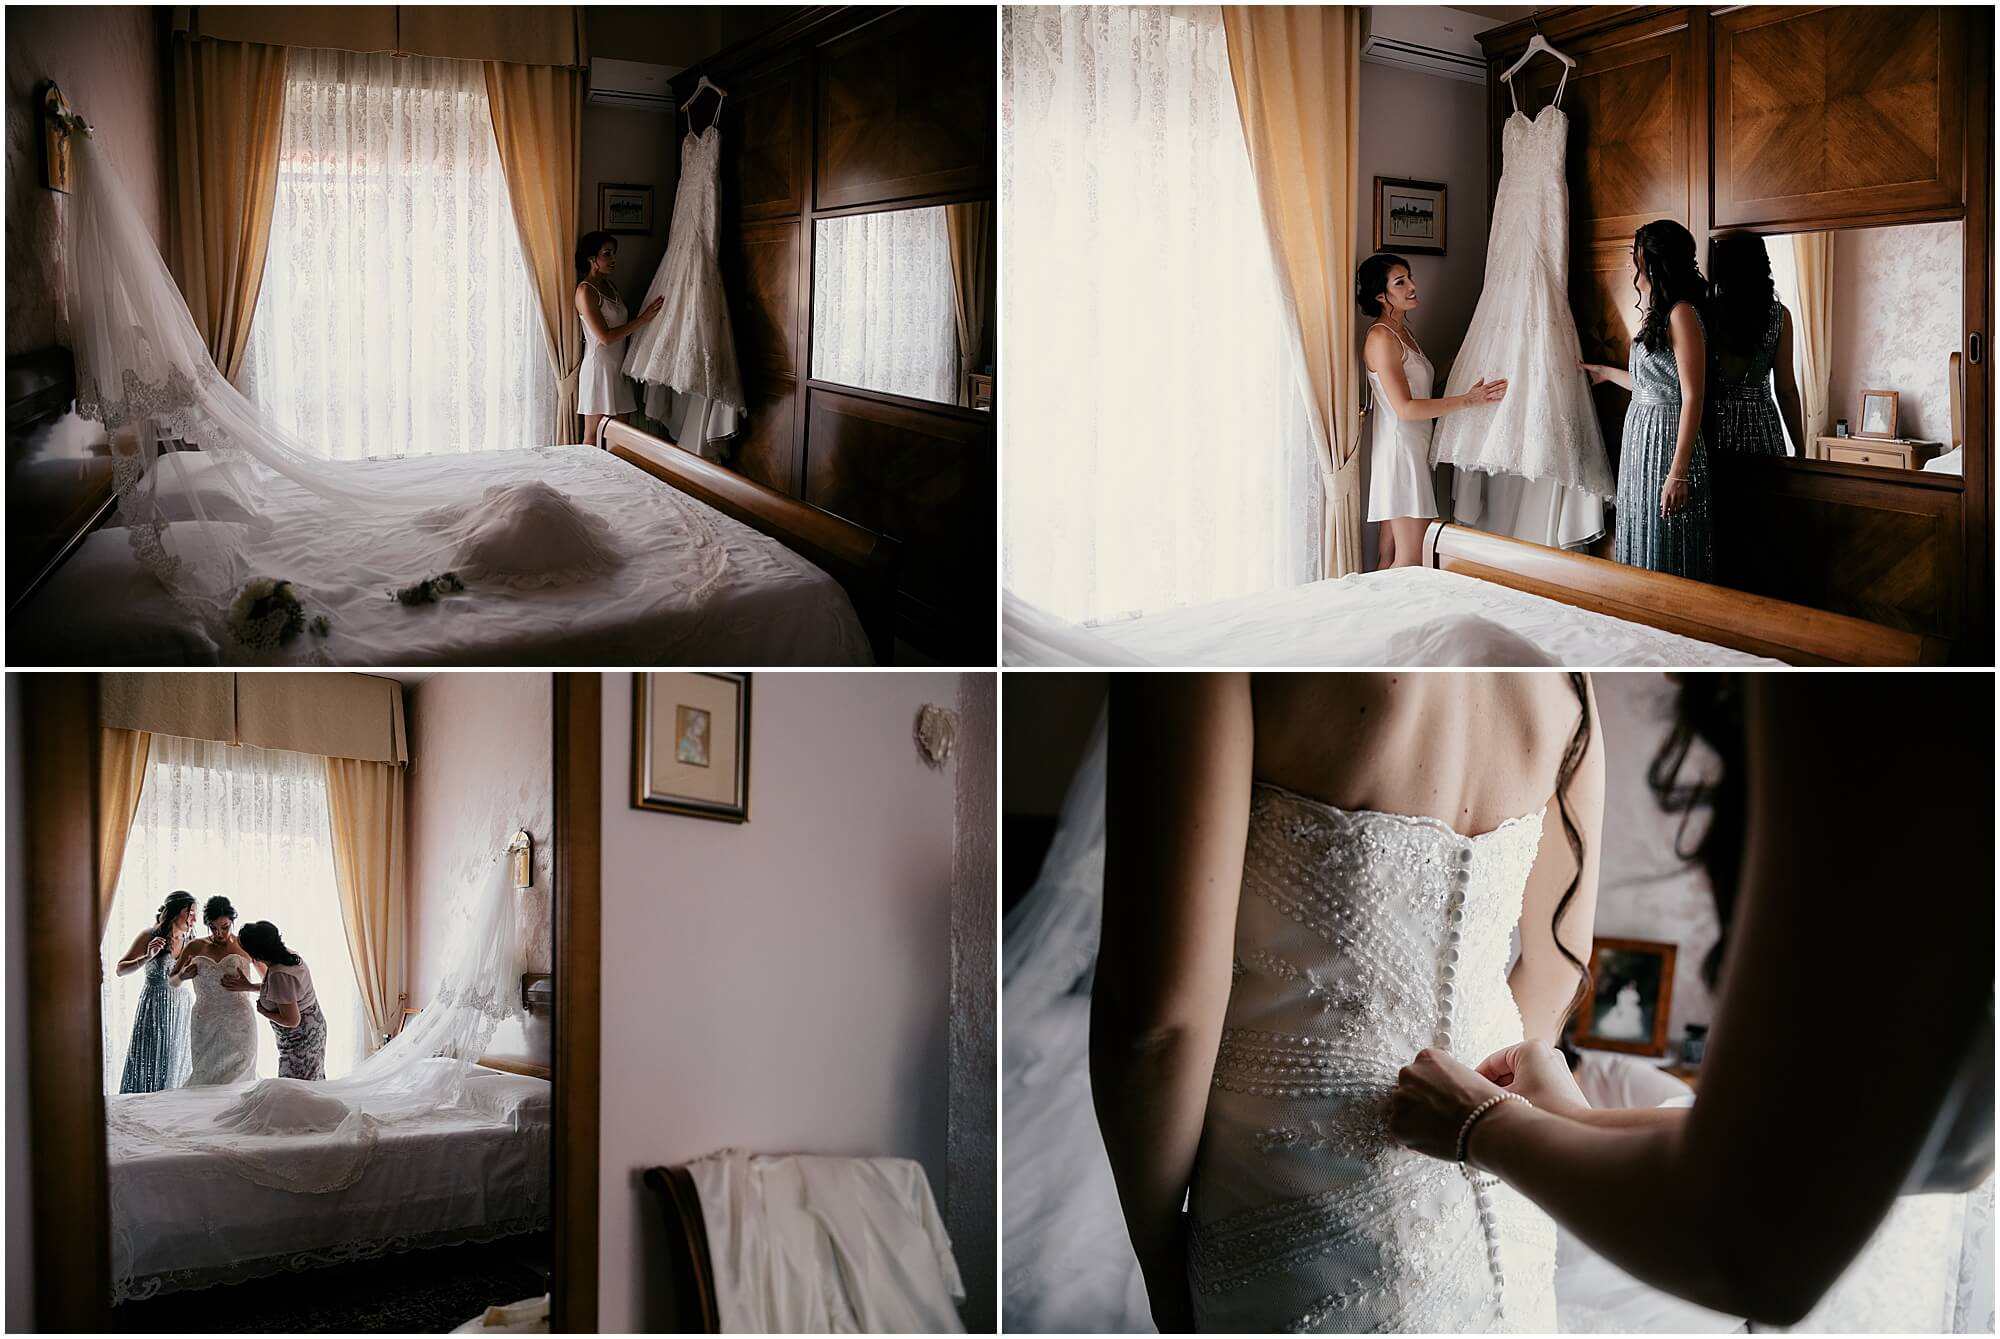 Davide e Valentina: Fotografo Matrimonio Toscana